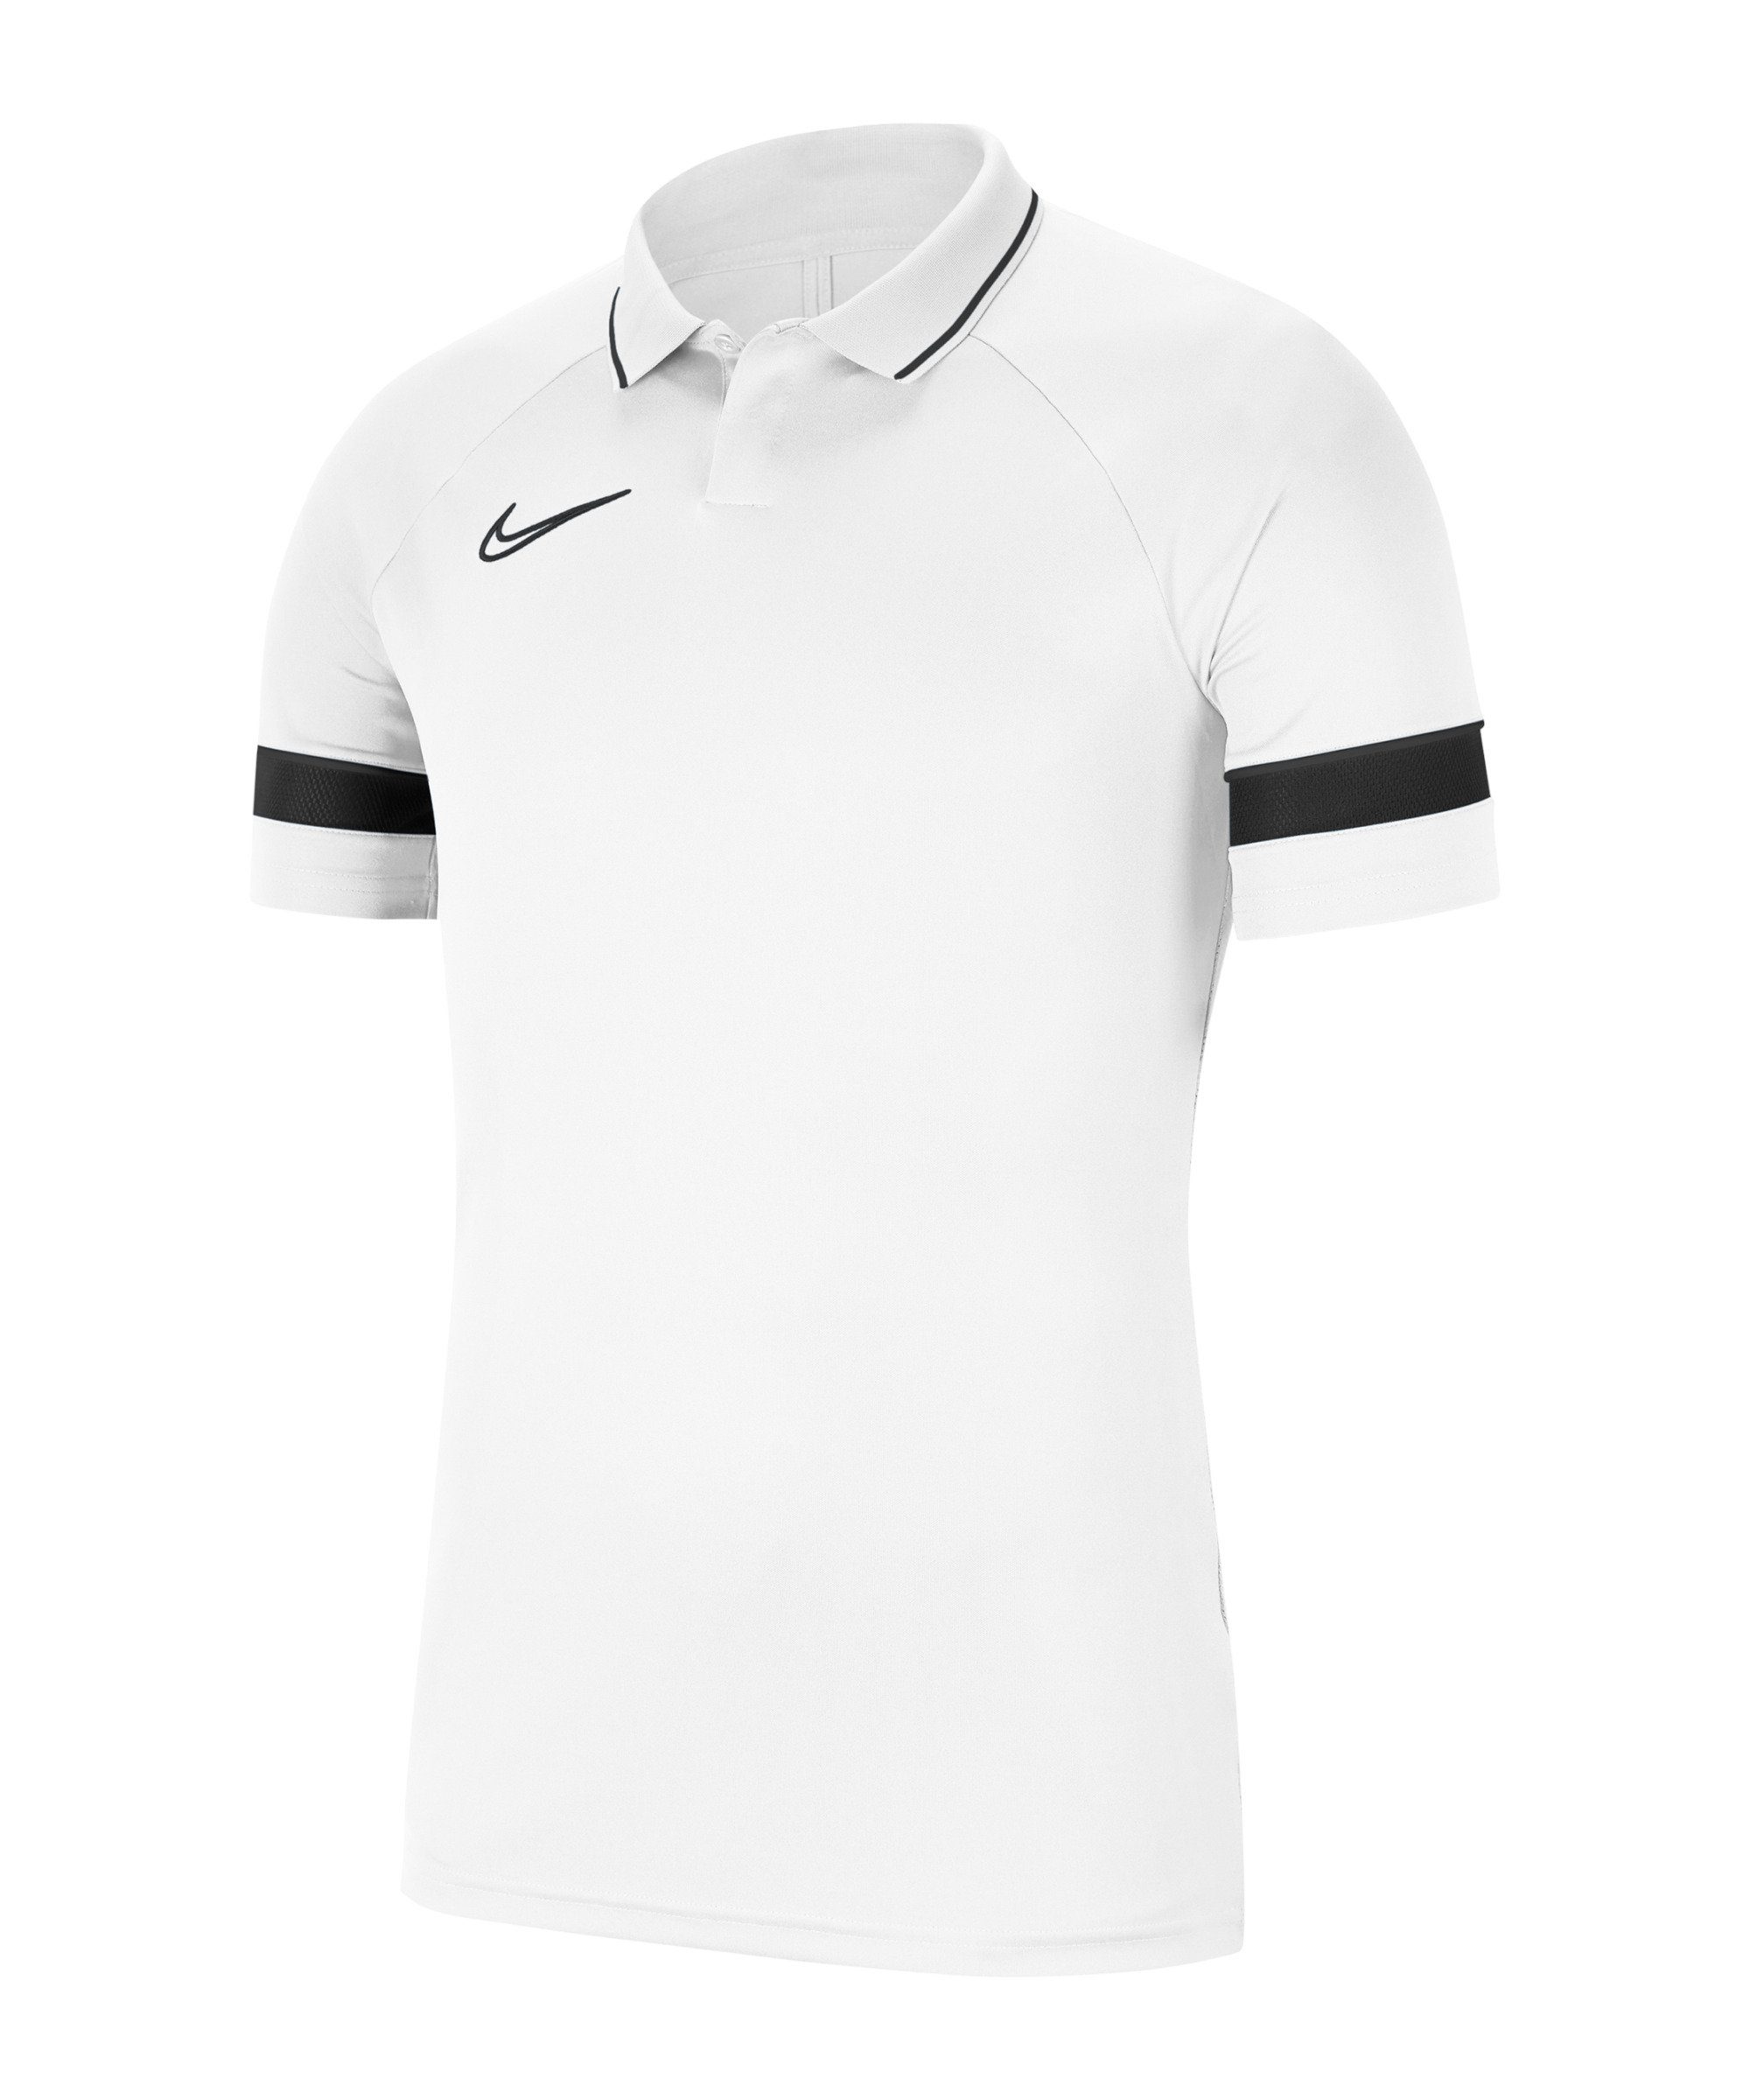 Academy 21 T-Shirt default Poloshirt weissschwarz Nike